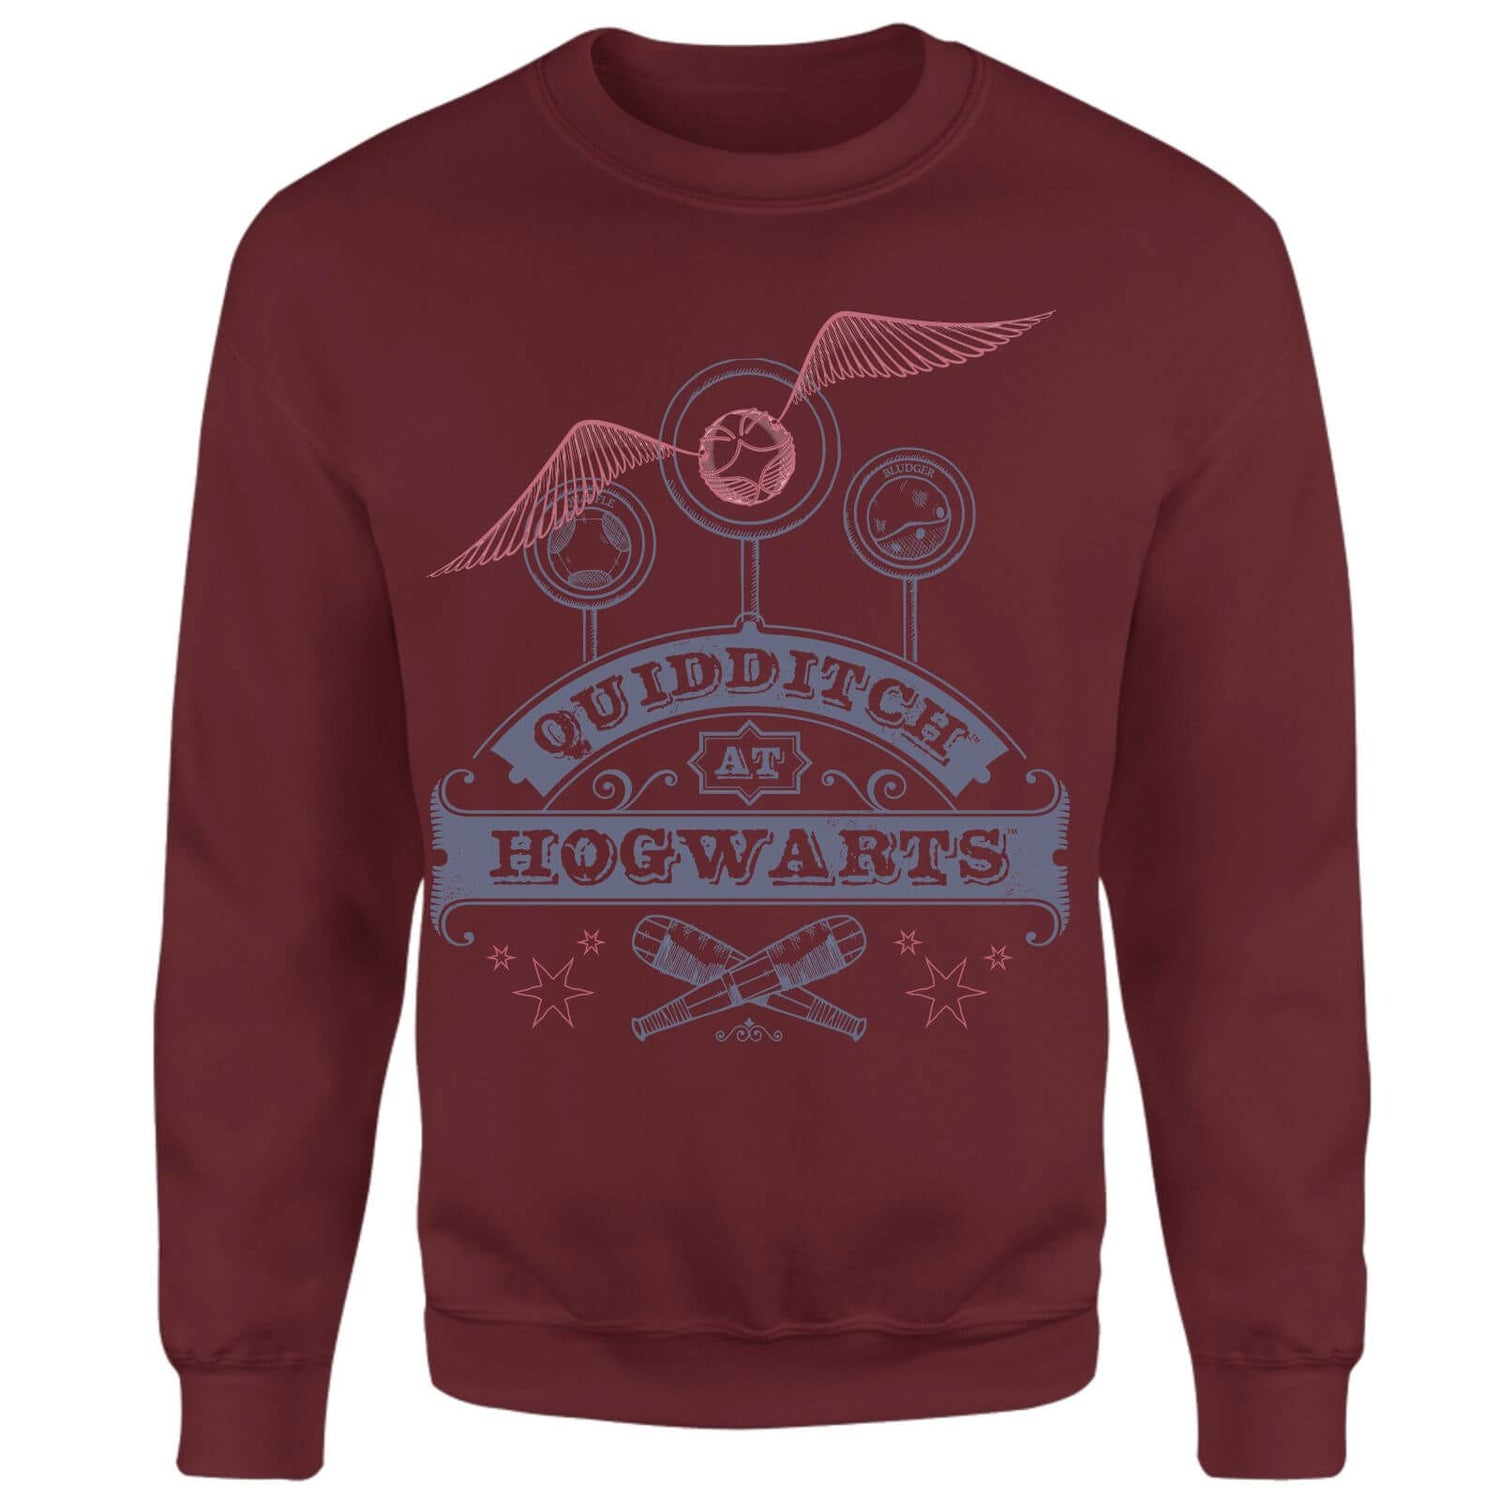 Harry Potter Quidditch At Hogwarts Sweatshirt - Burgundy